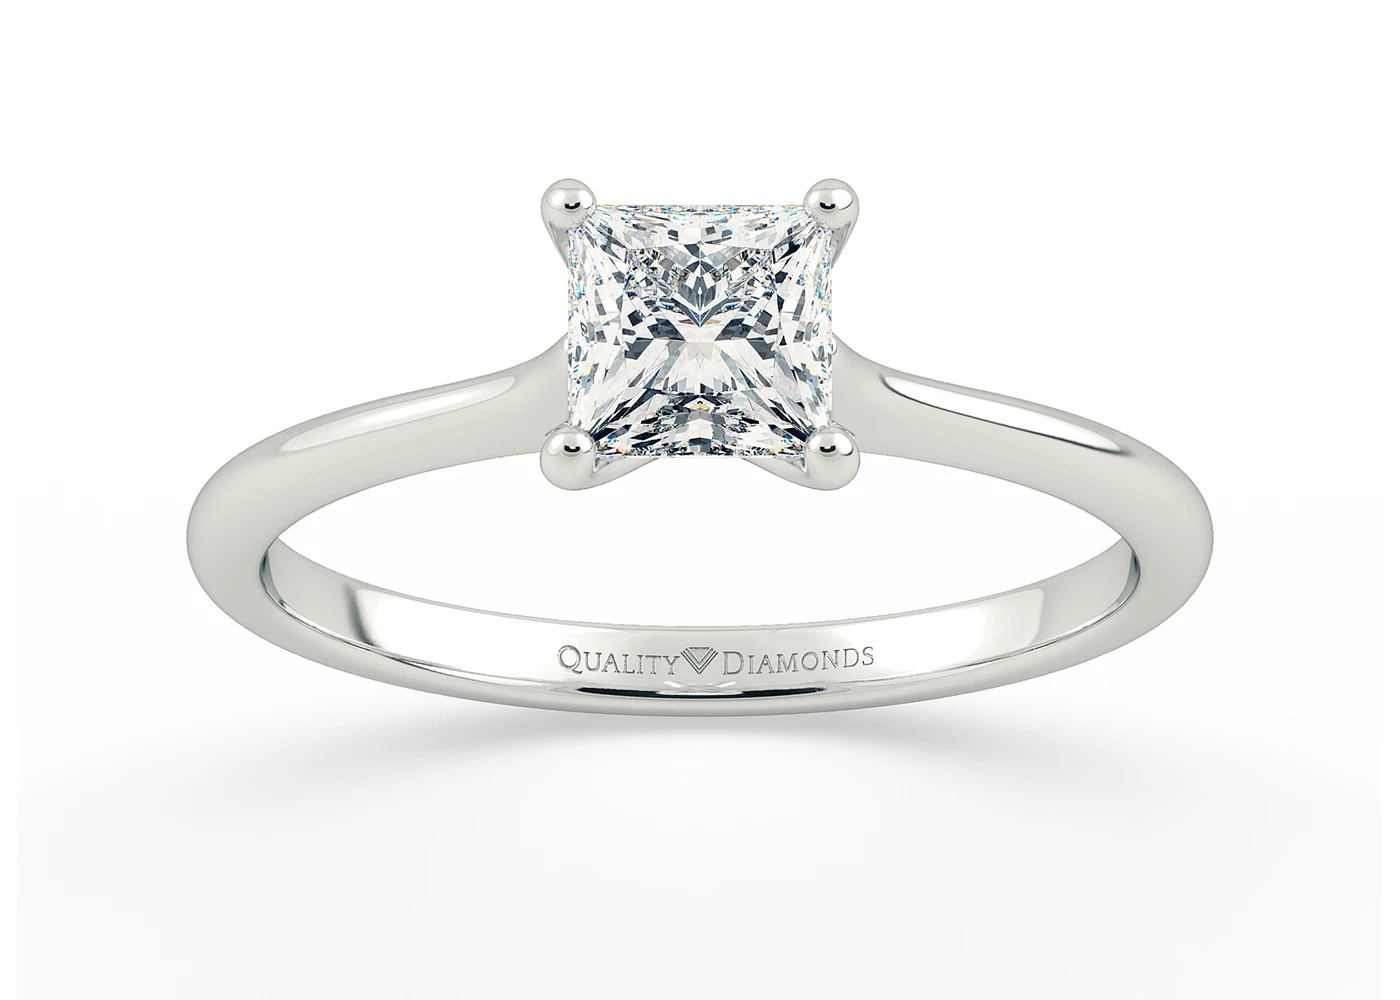 Princess Adamas Diamond Ring in Platinum